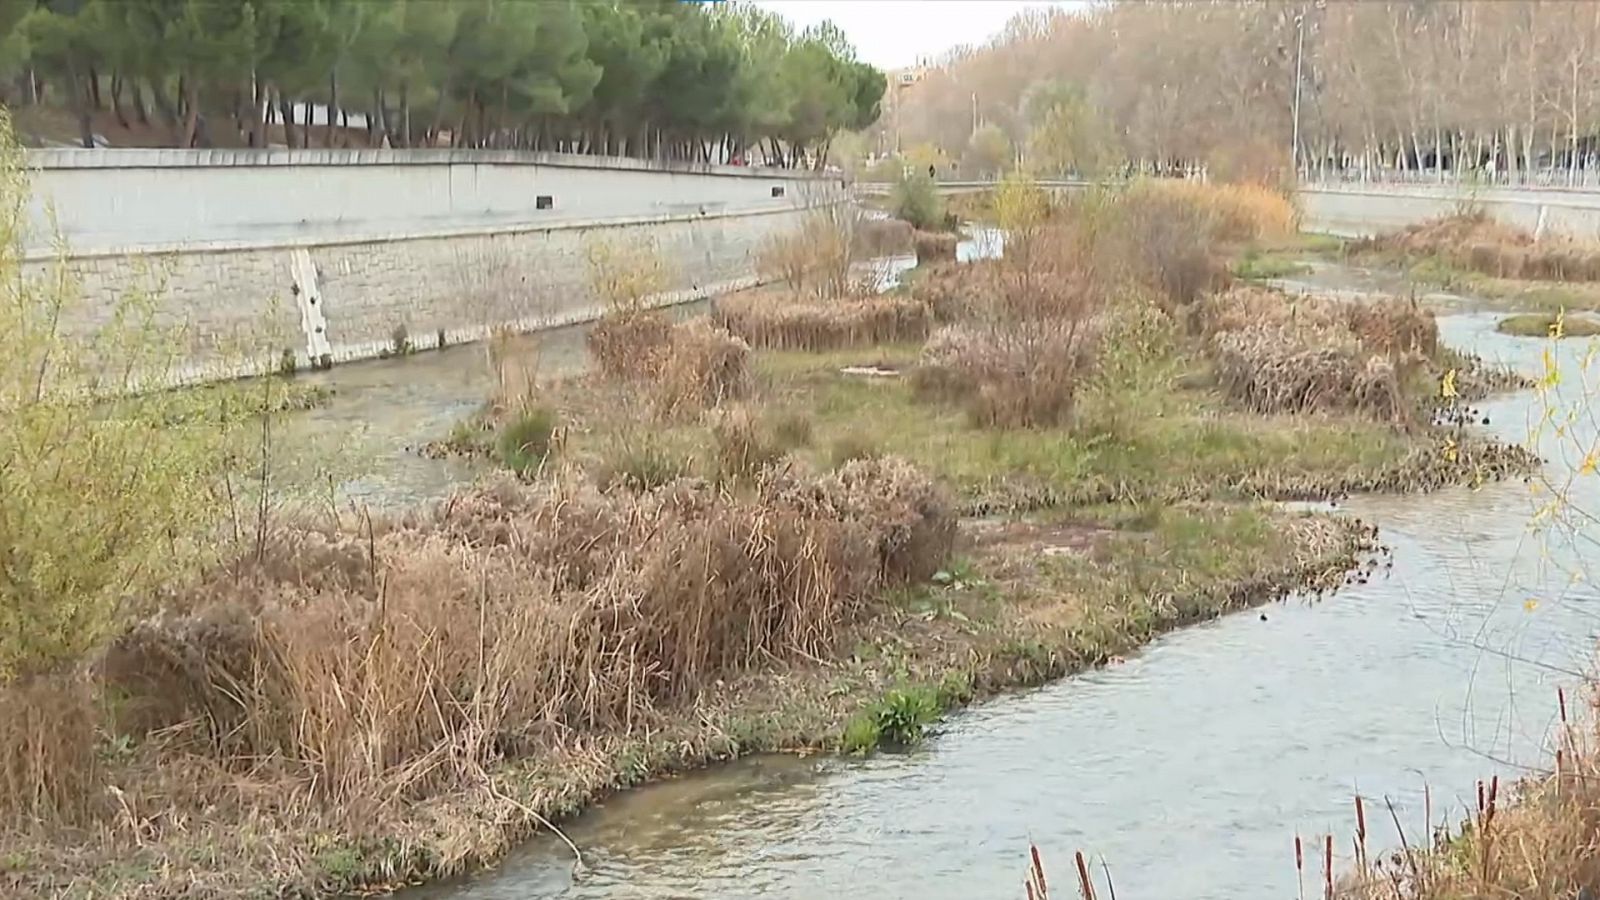 La renaturalización de los ríos españoles a través del 'modelo Manzanares' - Ver ahora